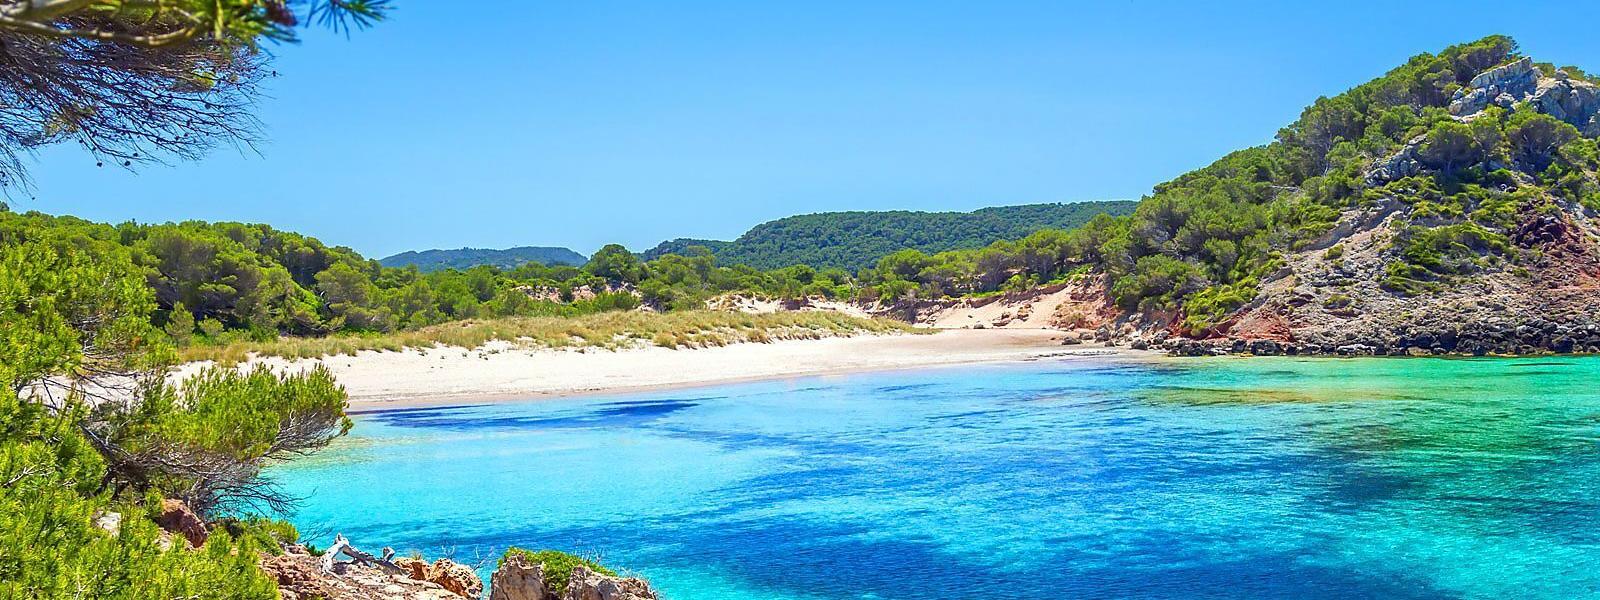 Ferienhäuser und Ferienwohnungen auf Menorca - e-domizil